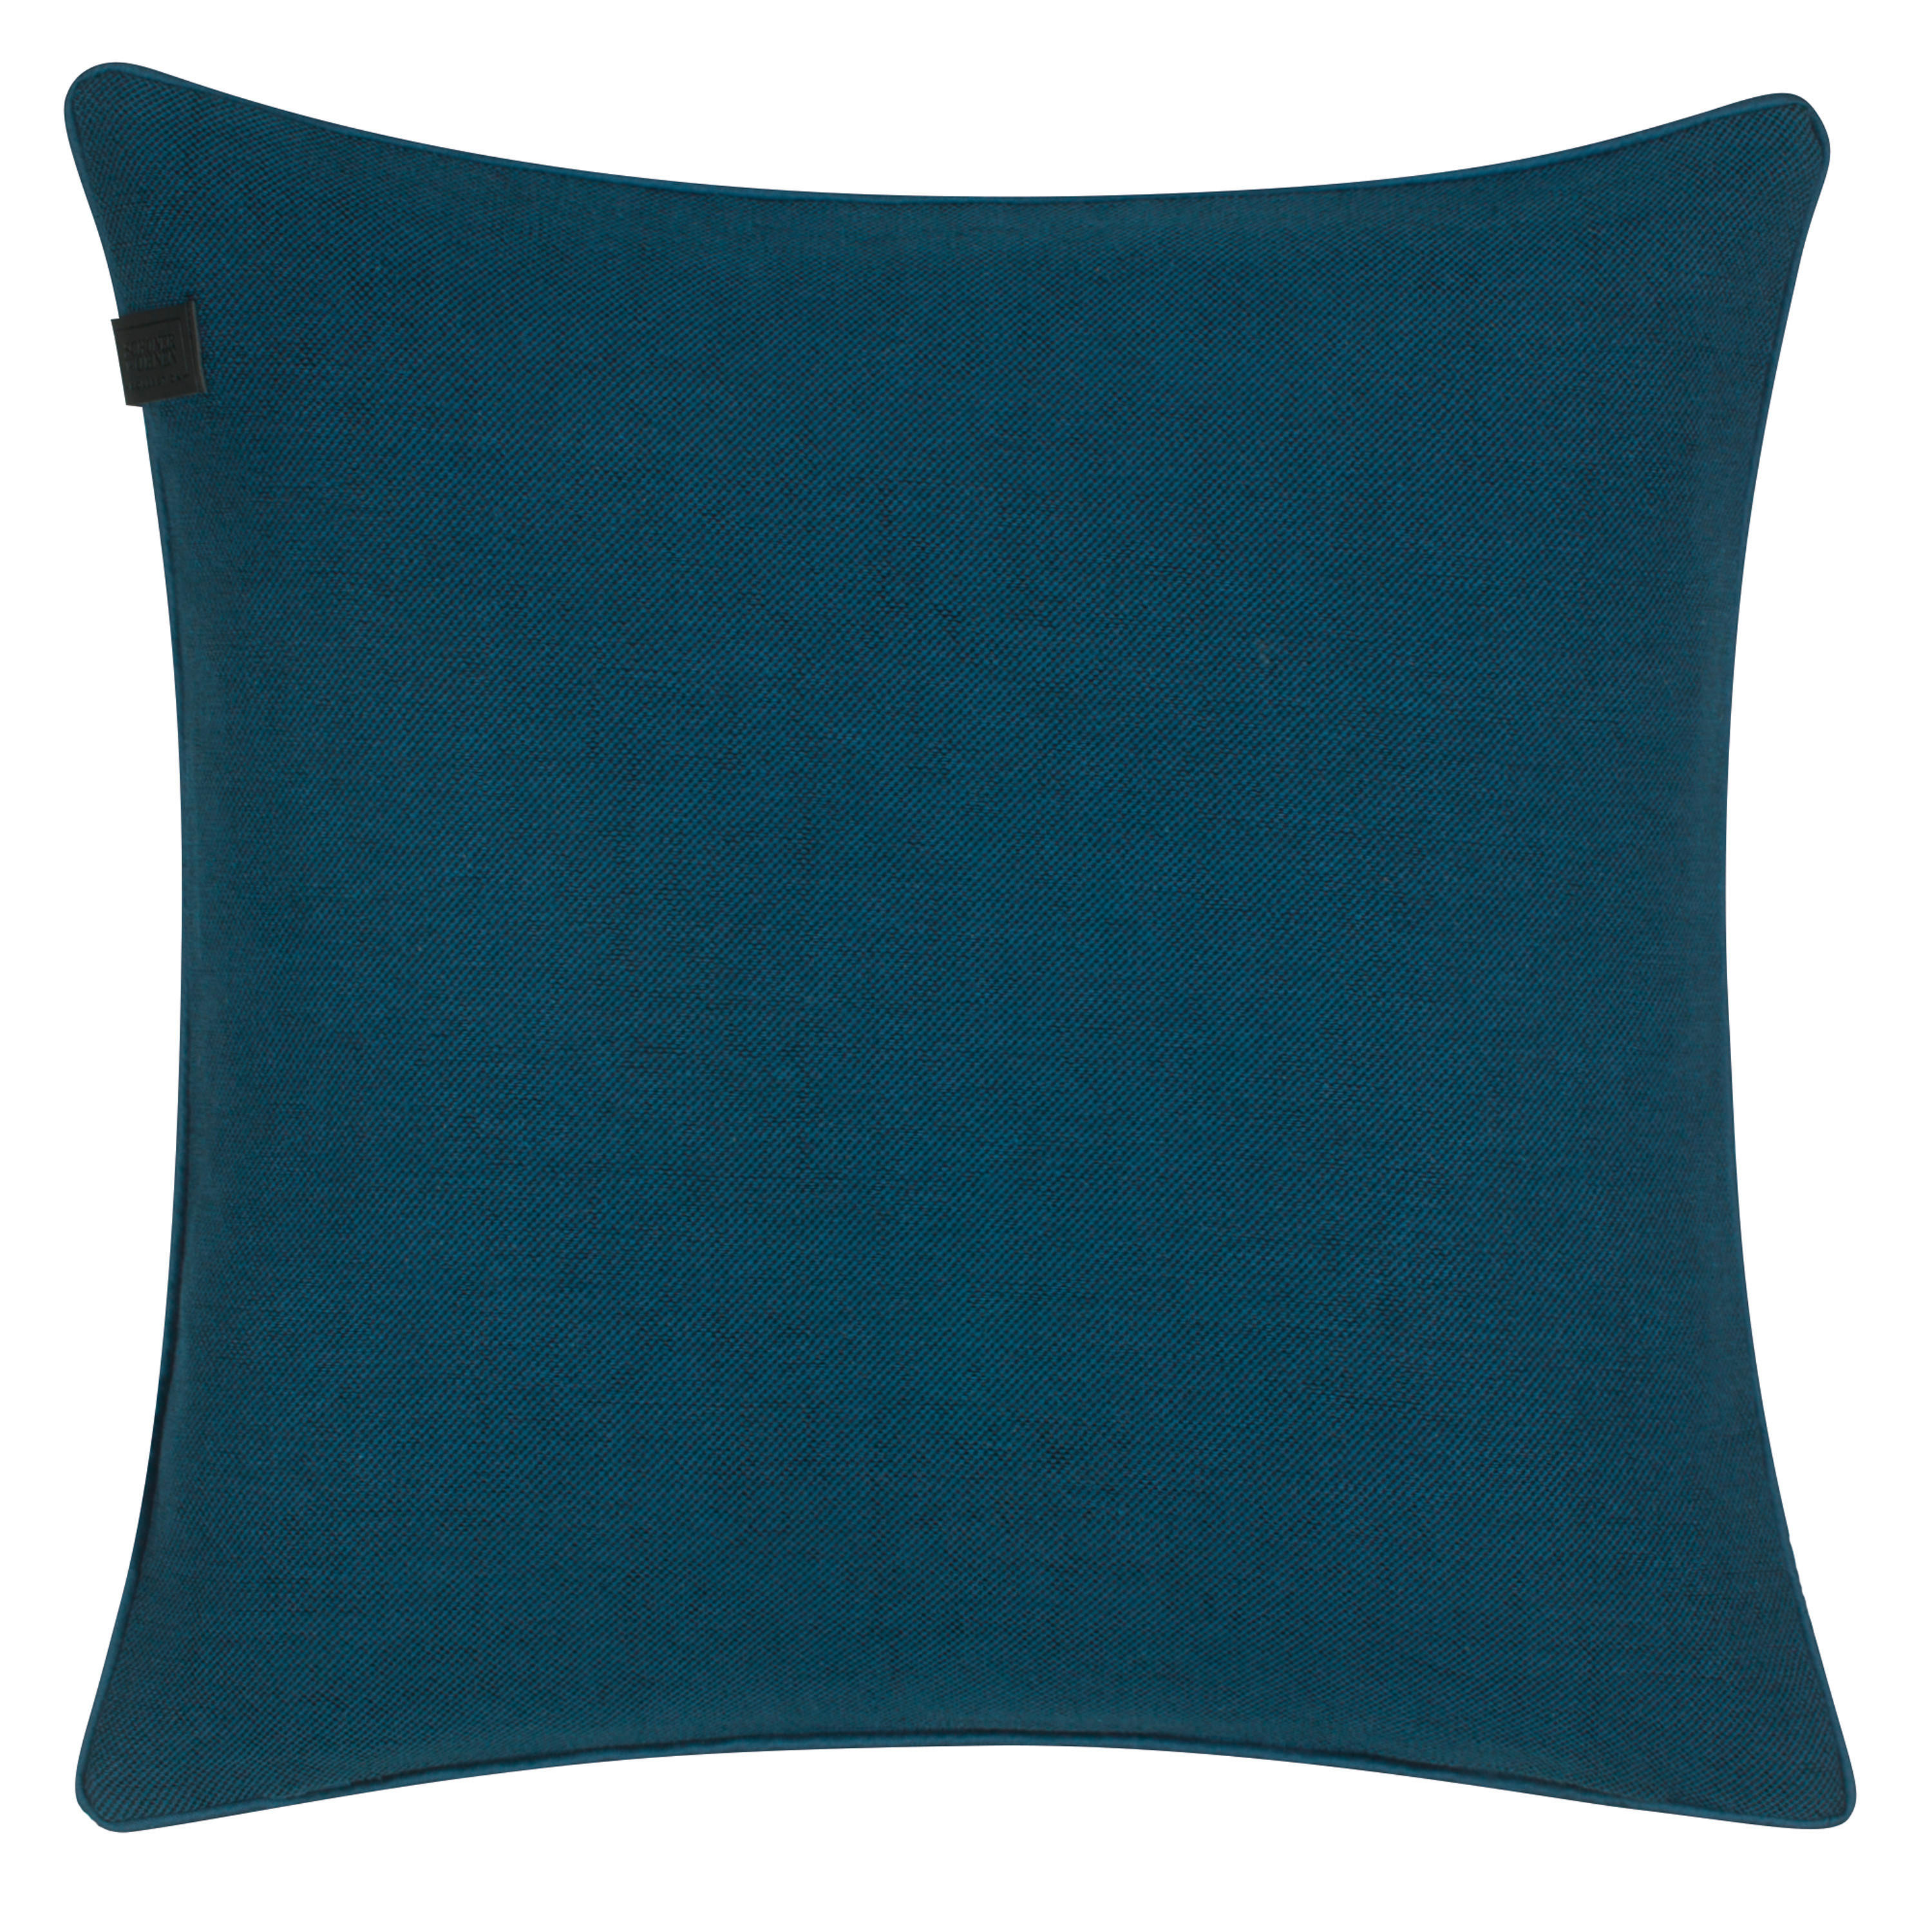 KISSENHÜLLE SW-Soft 45/45 cm  - Blau, Basics, Textil (45/45cm) - Schöner Wohnen